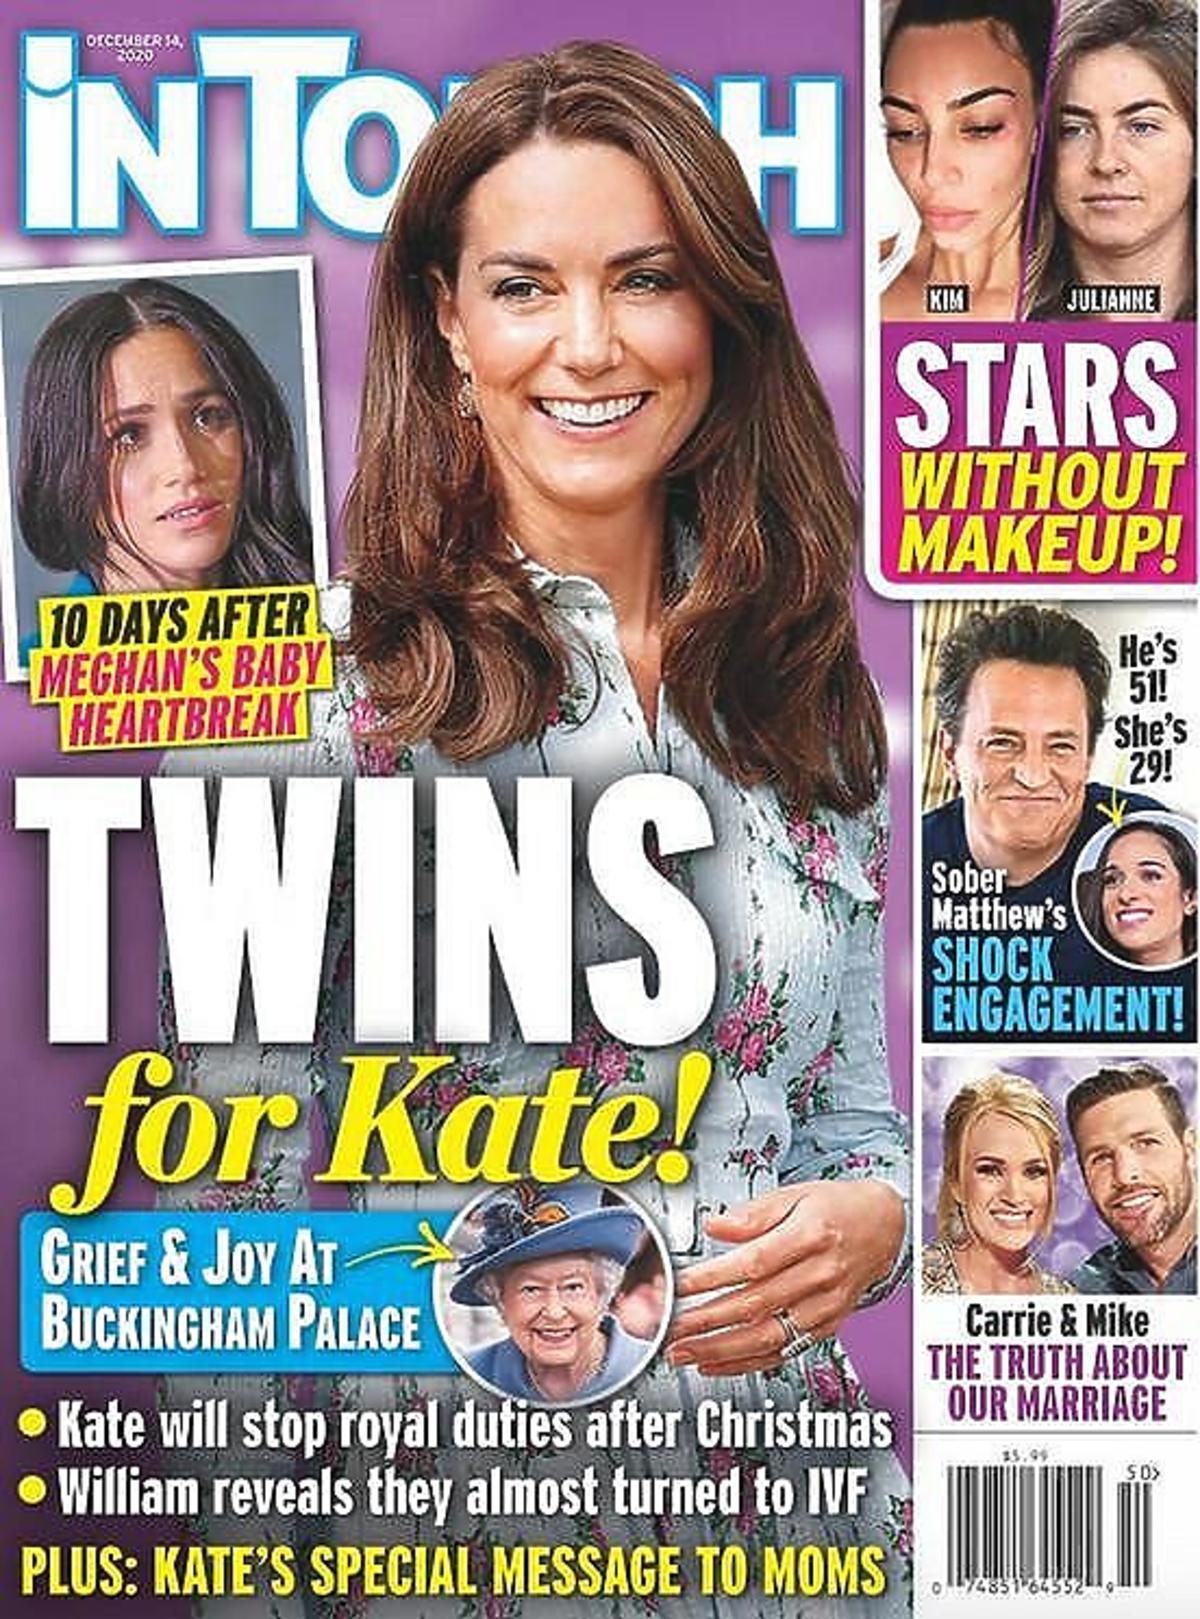 Księżna Kate jest w bliźniaczej ciąży?! Istnieje ważny powód, dla którego teraz ujawniono tę informację. Wszystko przez… Meghan Markle